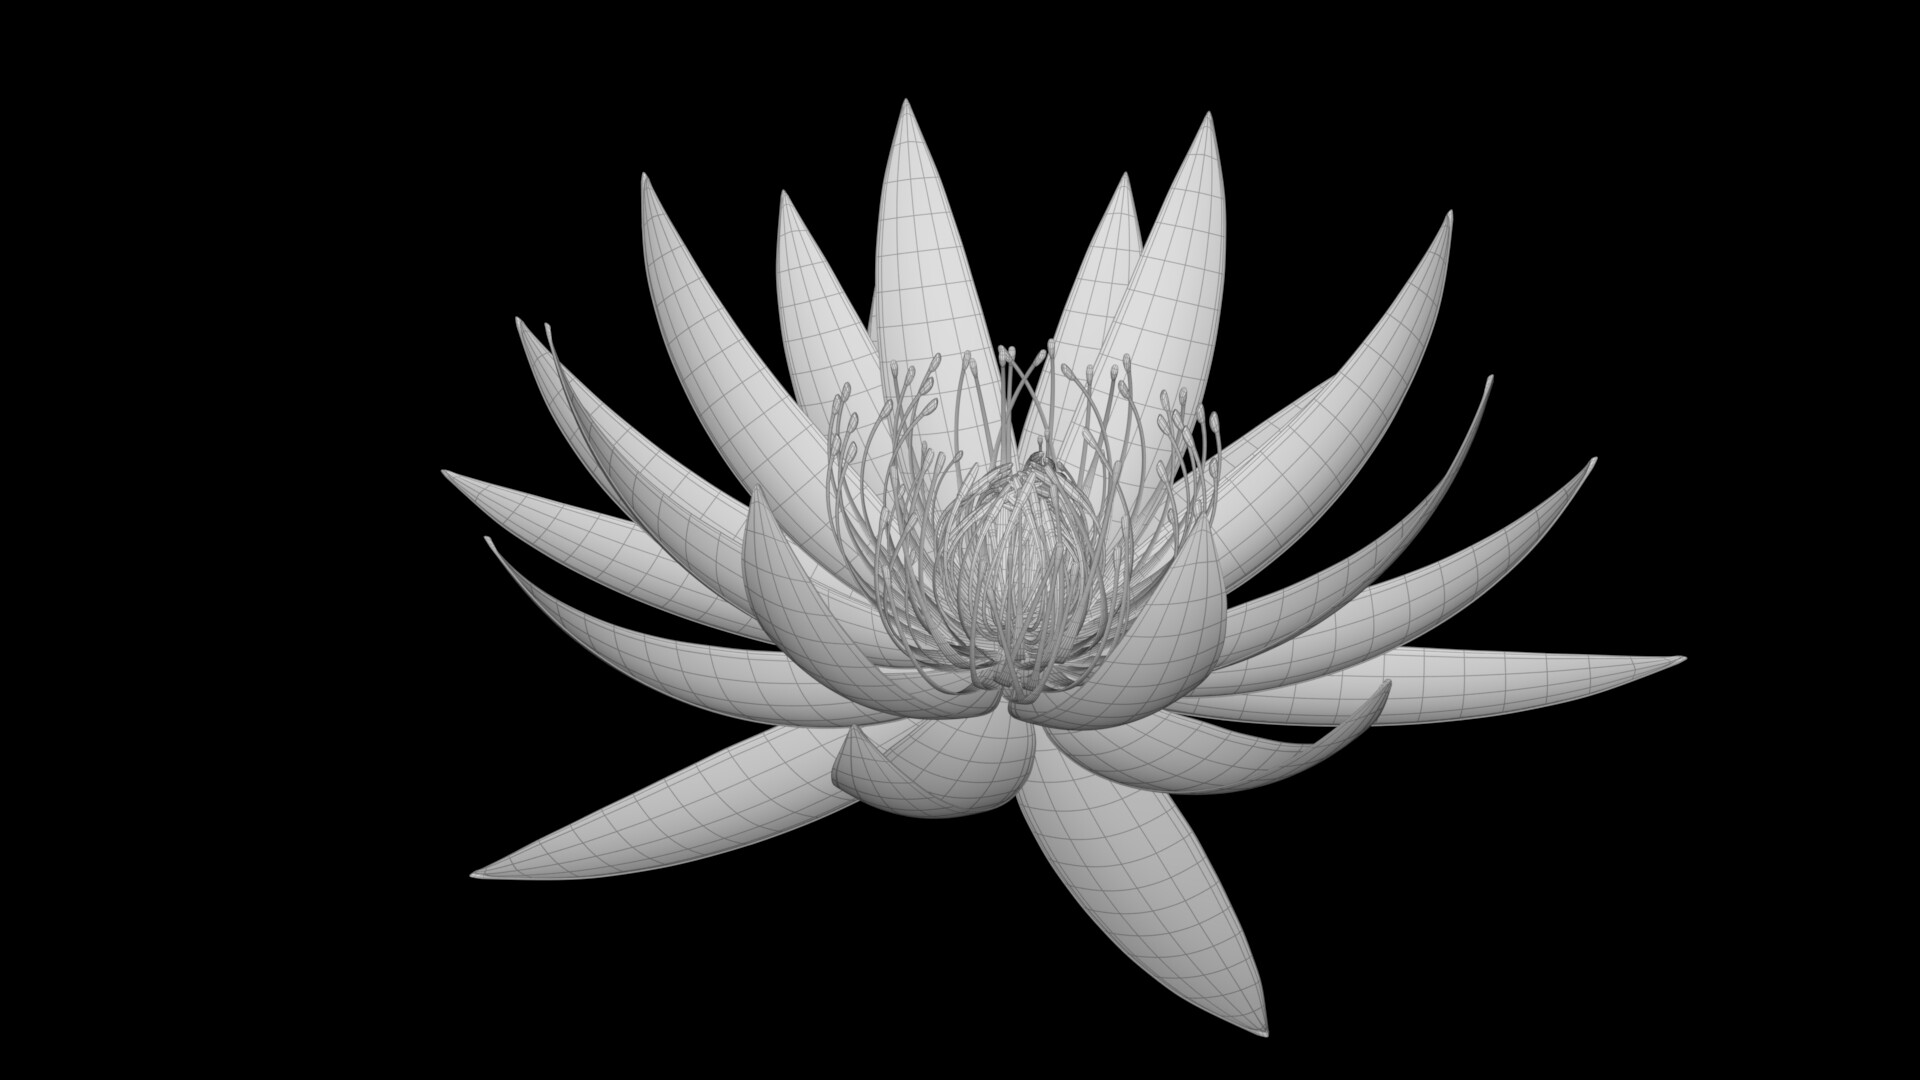 Hình vẽ hoa Sen white nền đen sạm tuyệt đẹp